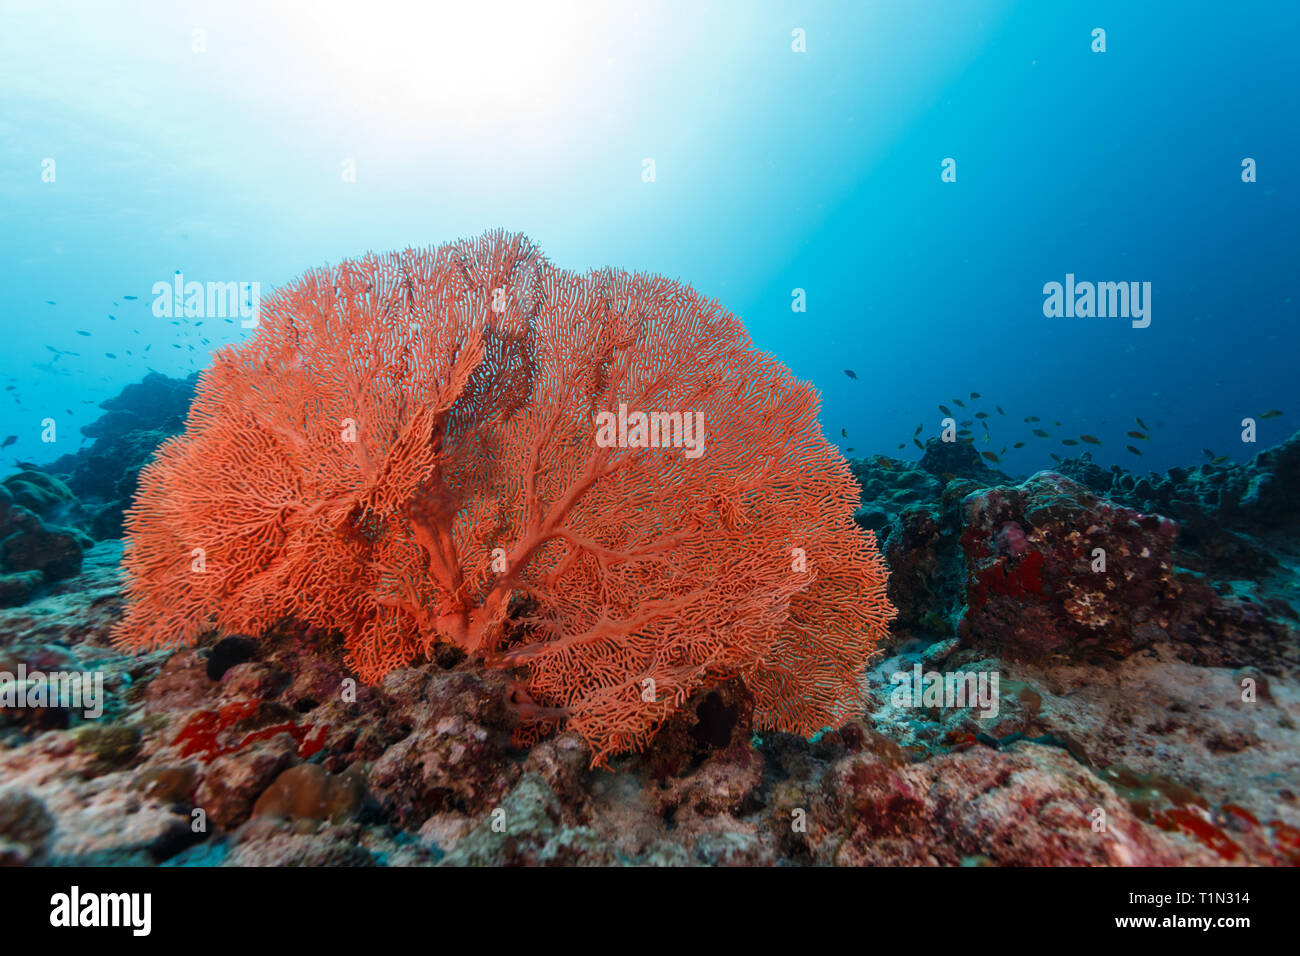 Nahaufnahme des wunderschönen tief orange Gorgonien meer Fan auf Riff mit bunten Sorten von Schwämmen und Korallen gefüllt Stockfoto